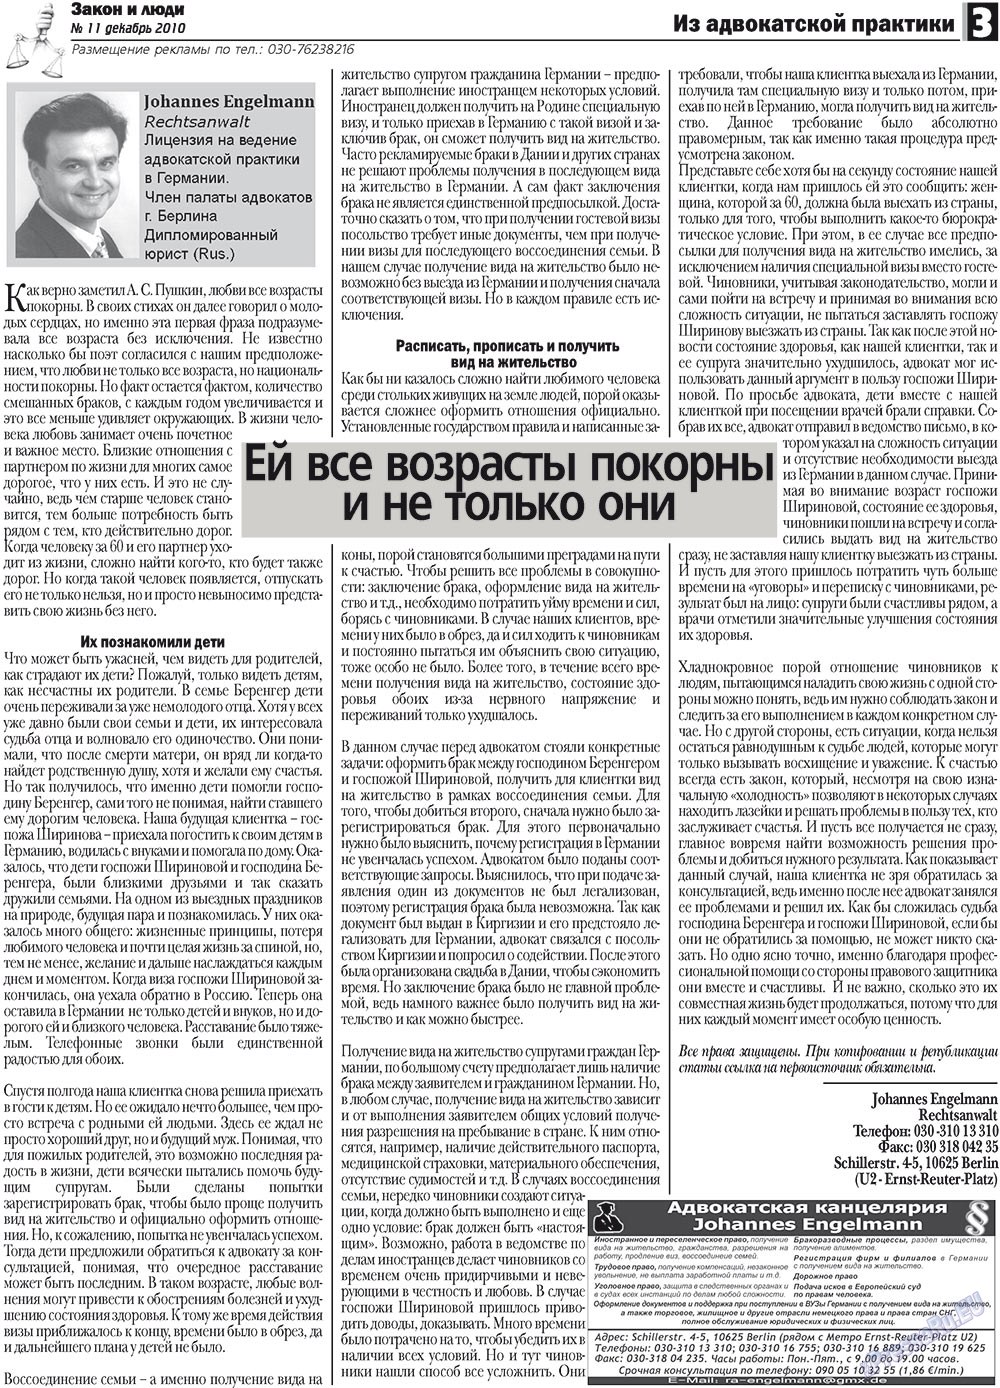 Закон и люди, газета. 2010 №11 стр.3